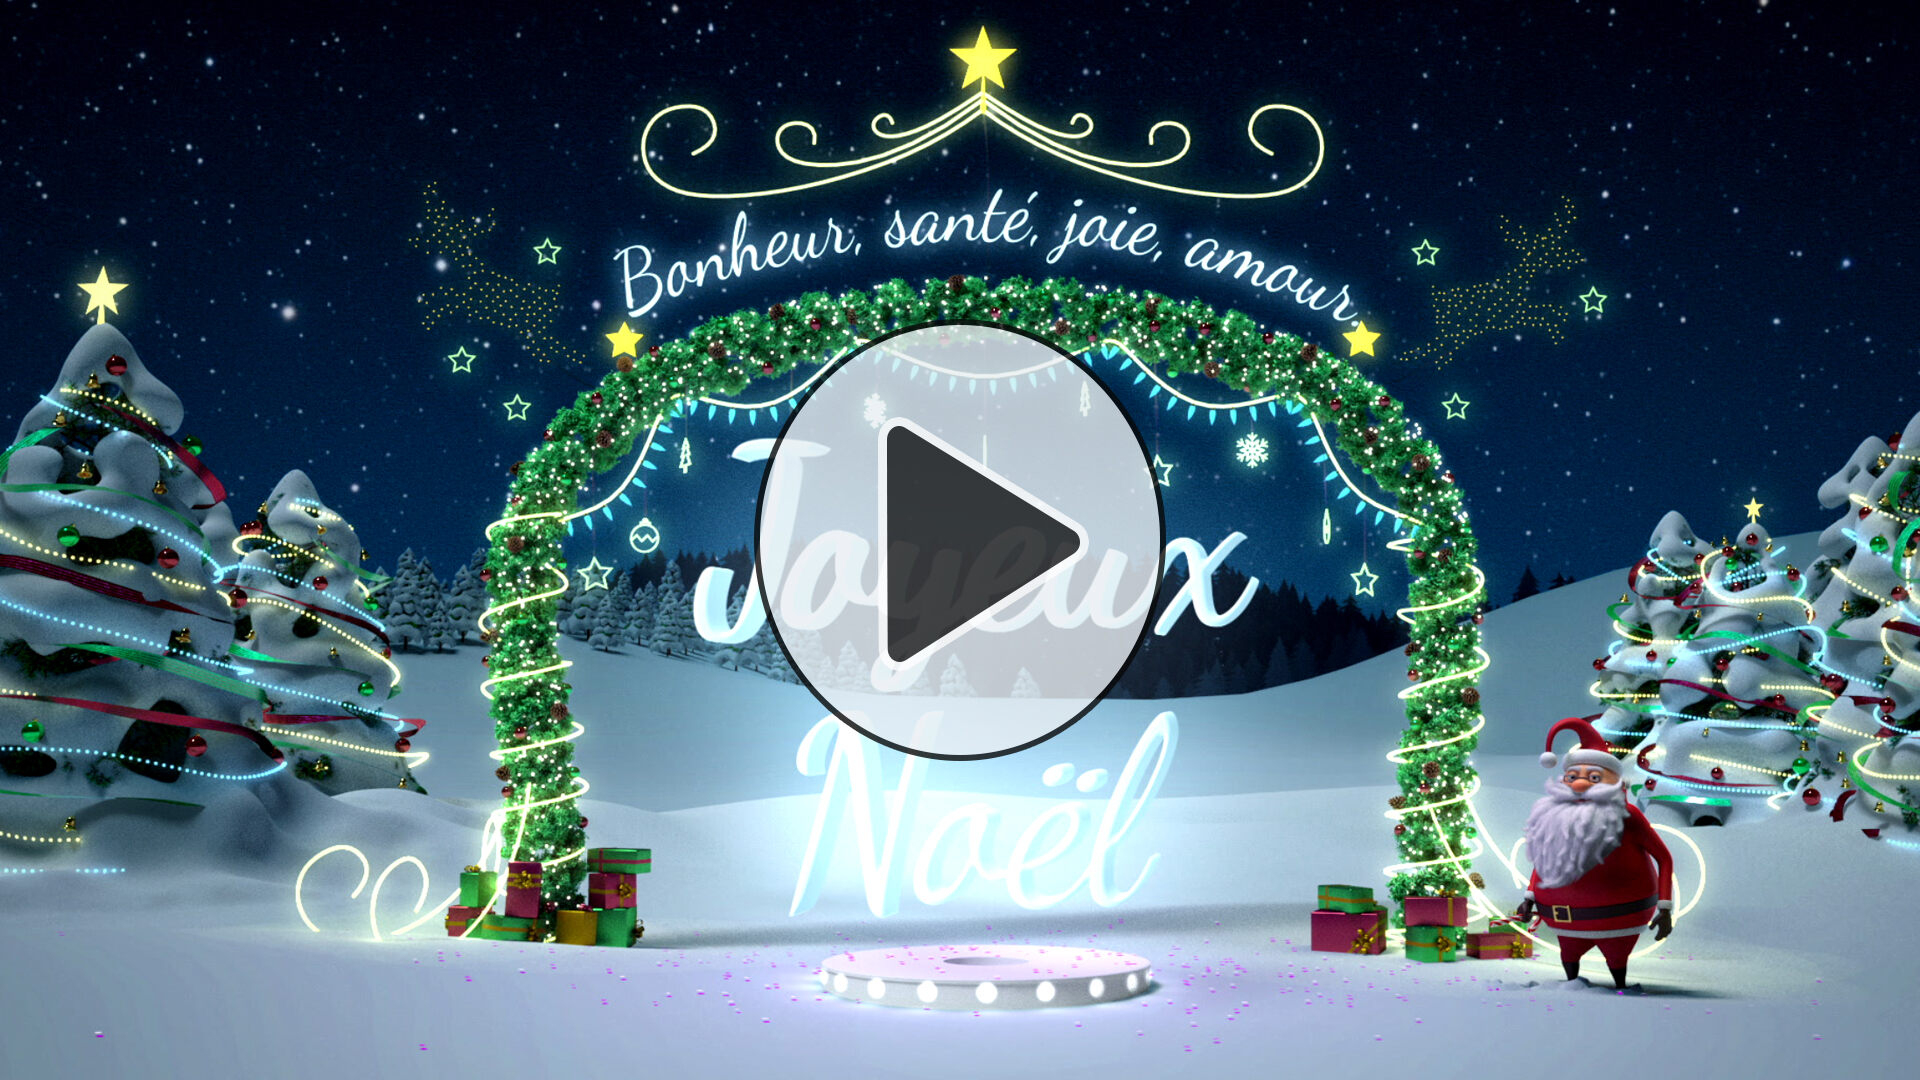 Cartes De Noël Gratuites - Joliecarte concernant Cart De Noel 